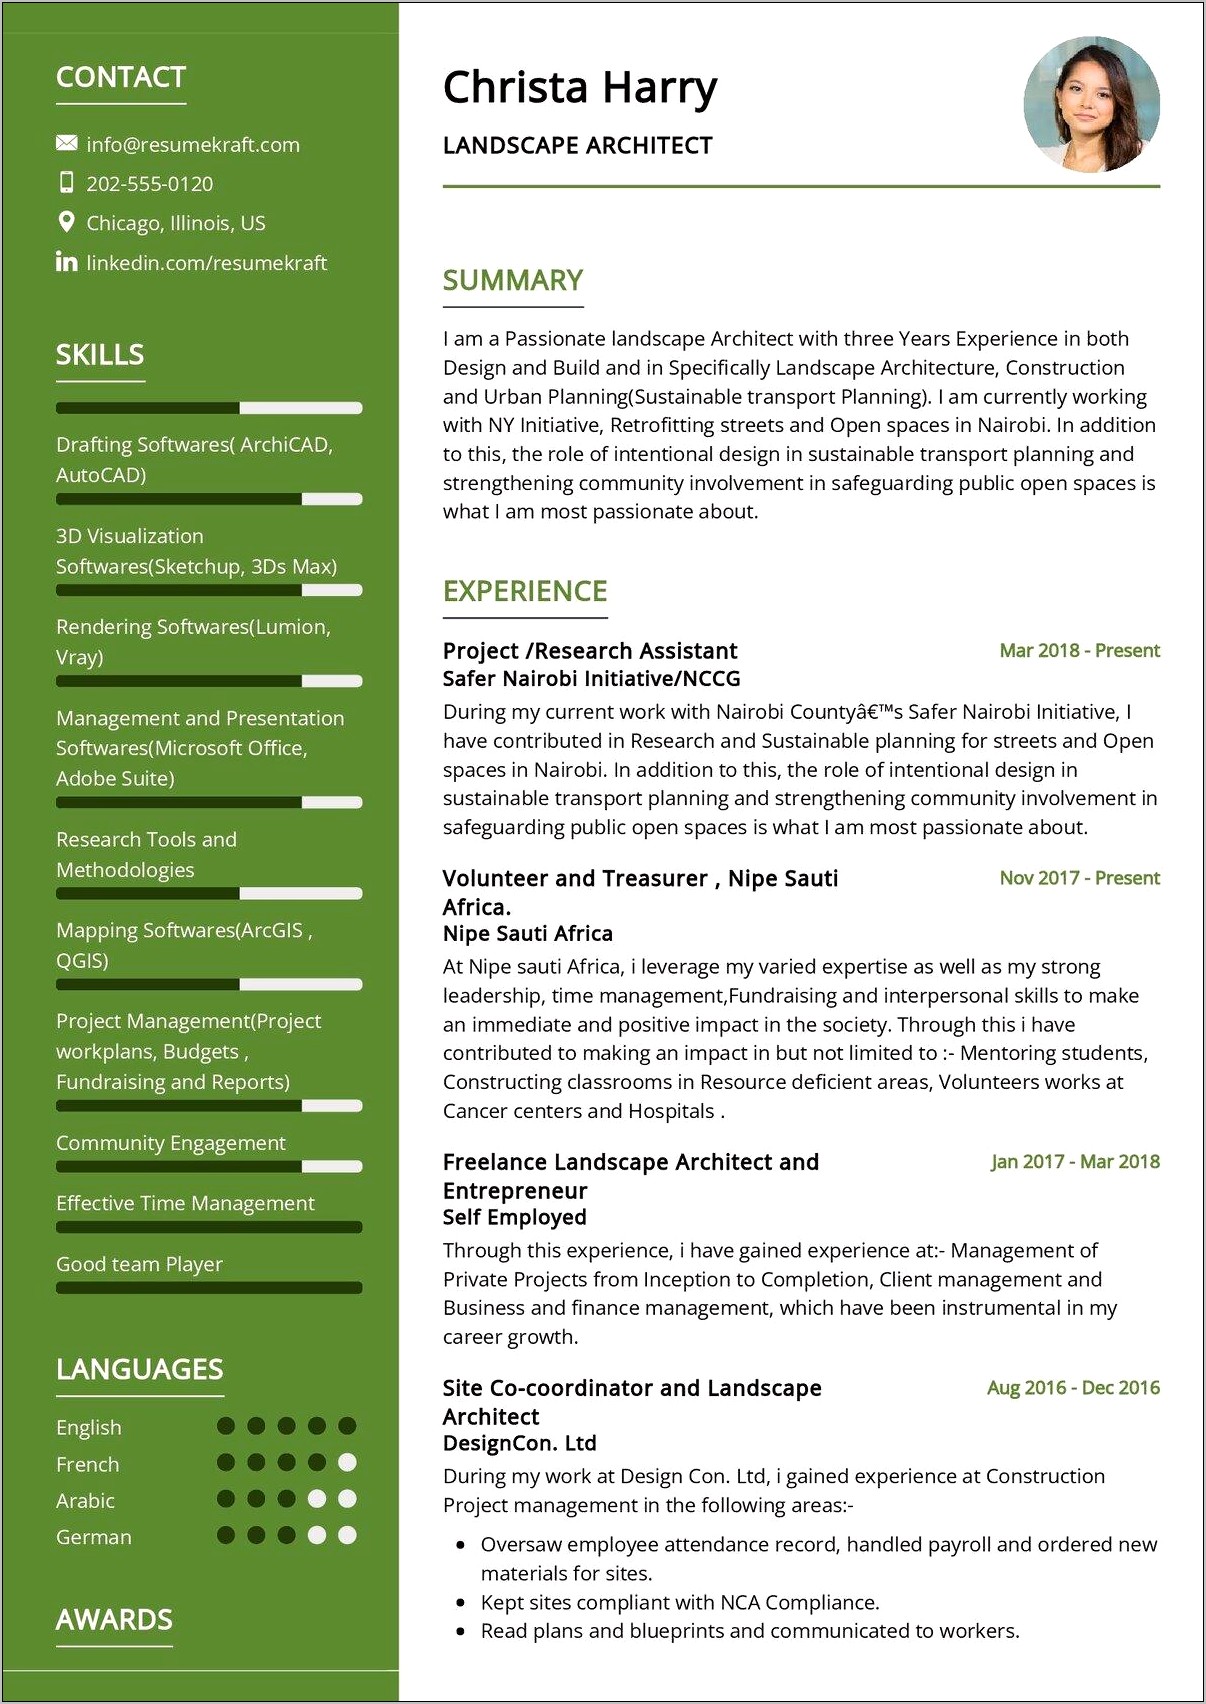 Resume Job Description For Landscaping